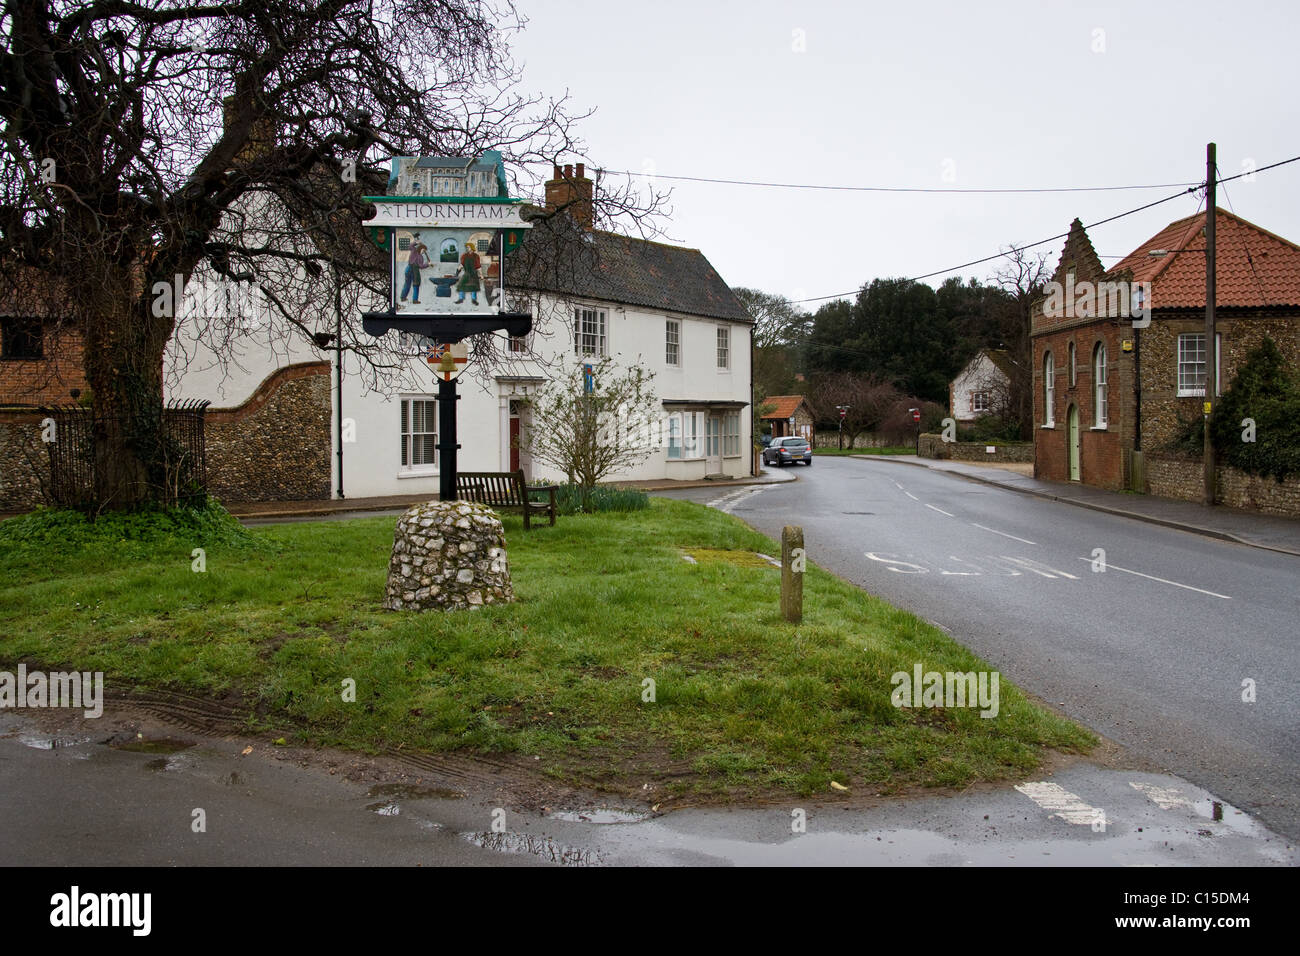 Thornham village sign,Norfolk,England Stock Photo